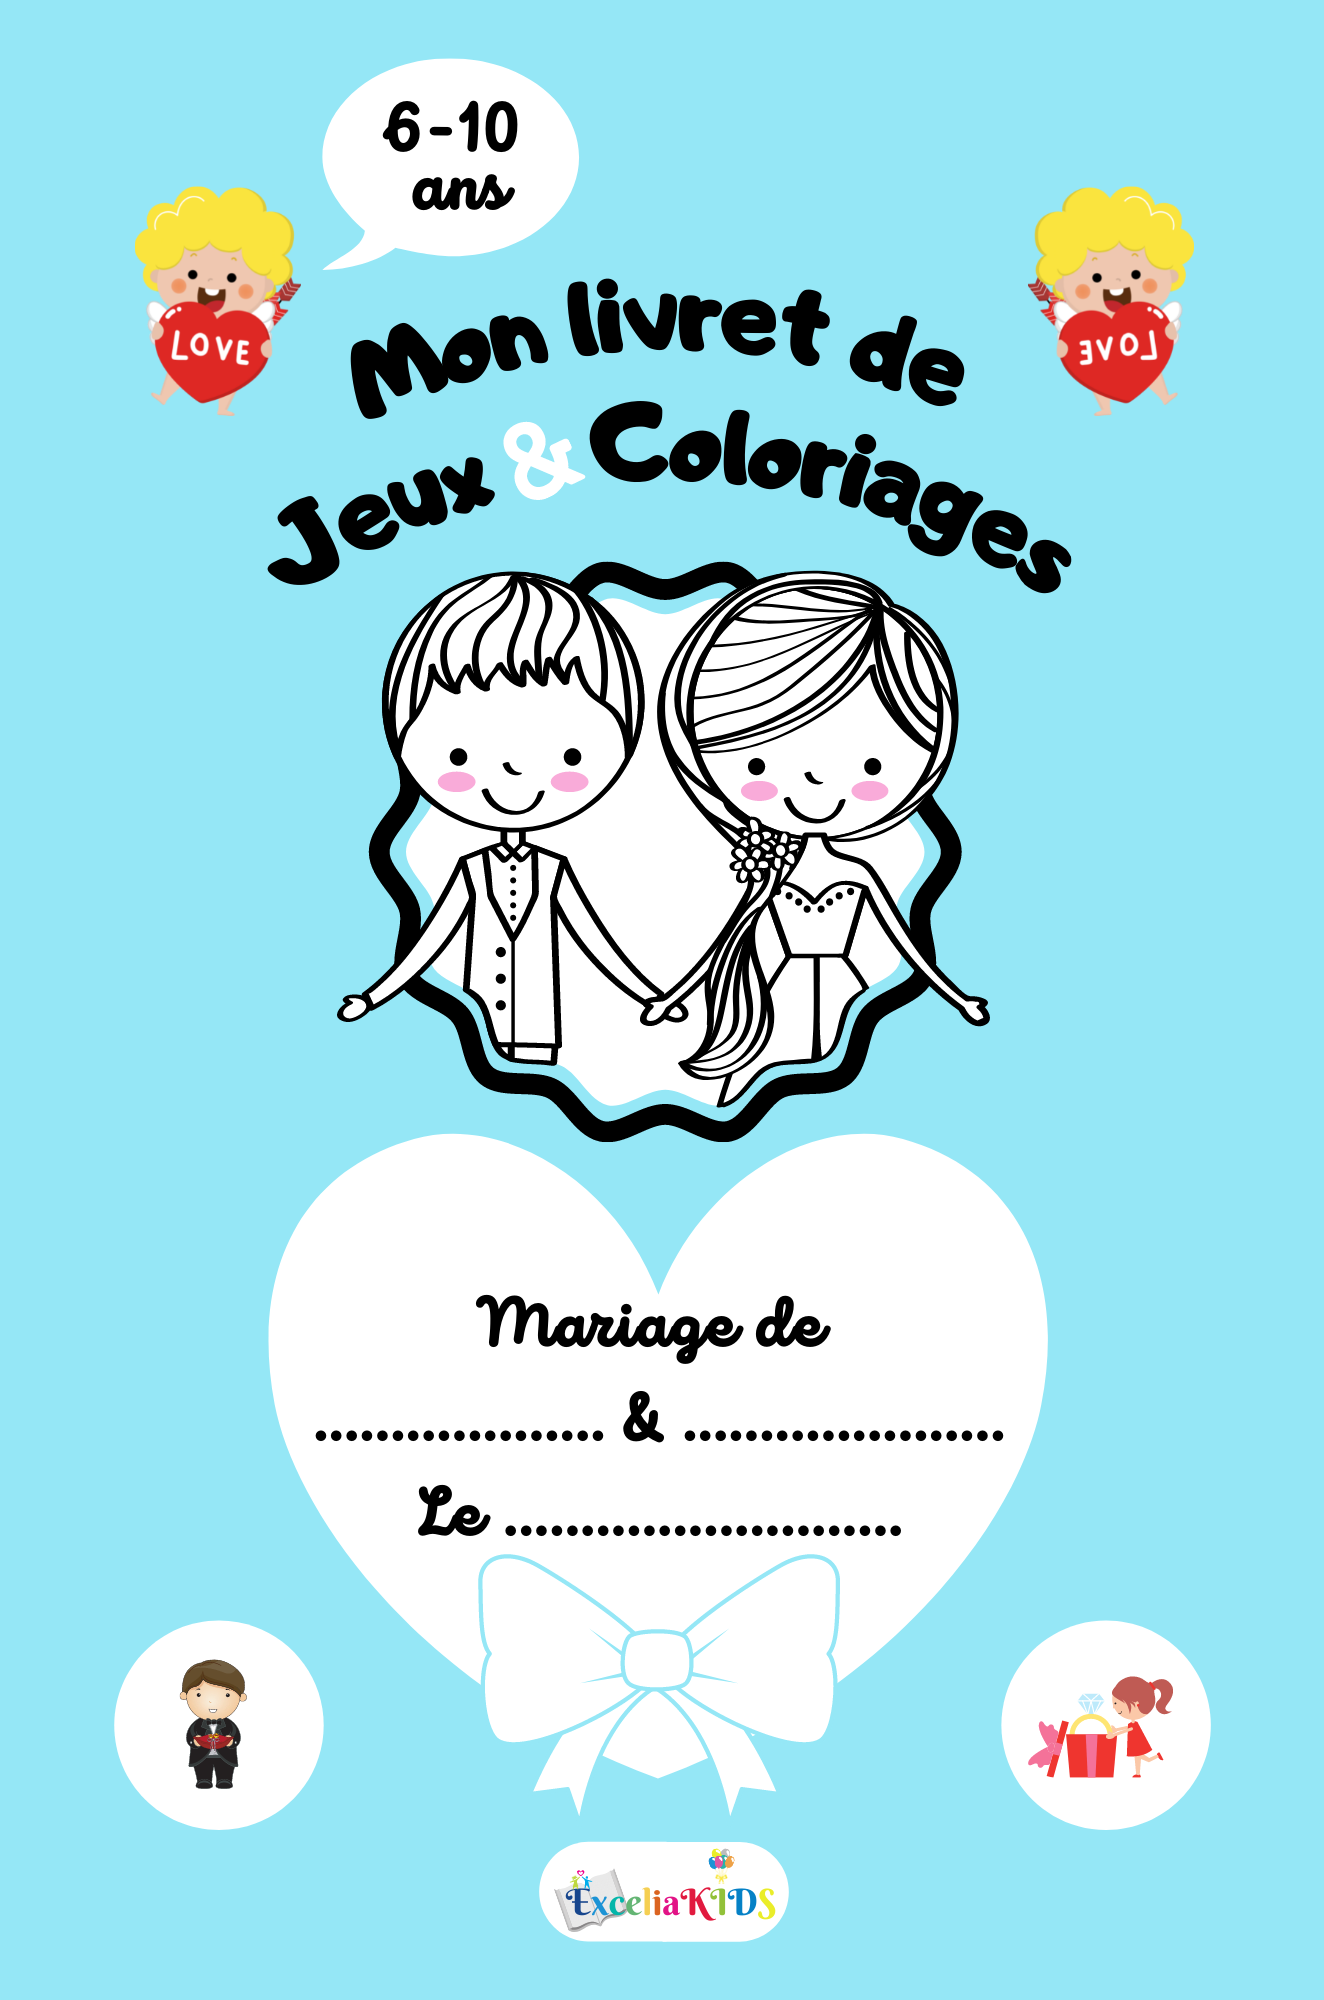 Mon livret de jeux et coloriages de mariage - Idée cadeau pour occuper les enfants invités de 6 à 10 ans pendant la cérémonie de mariage